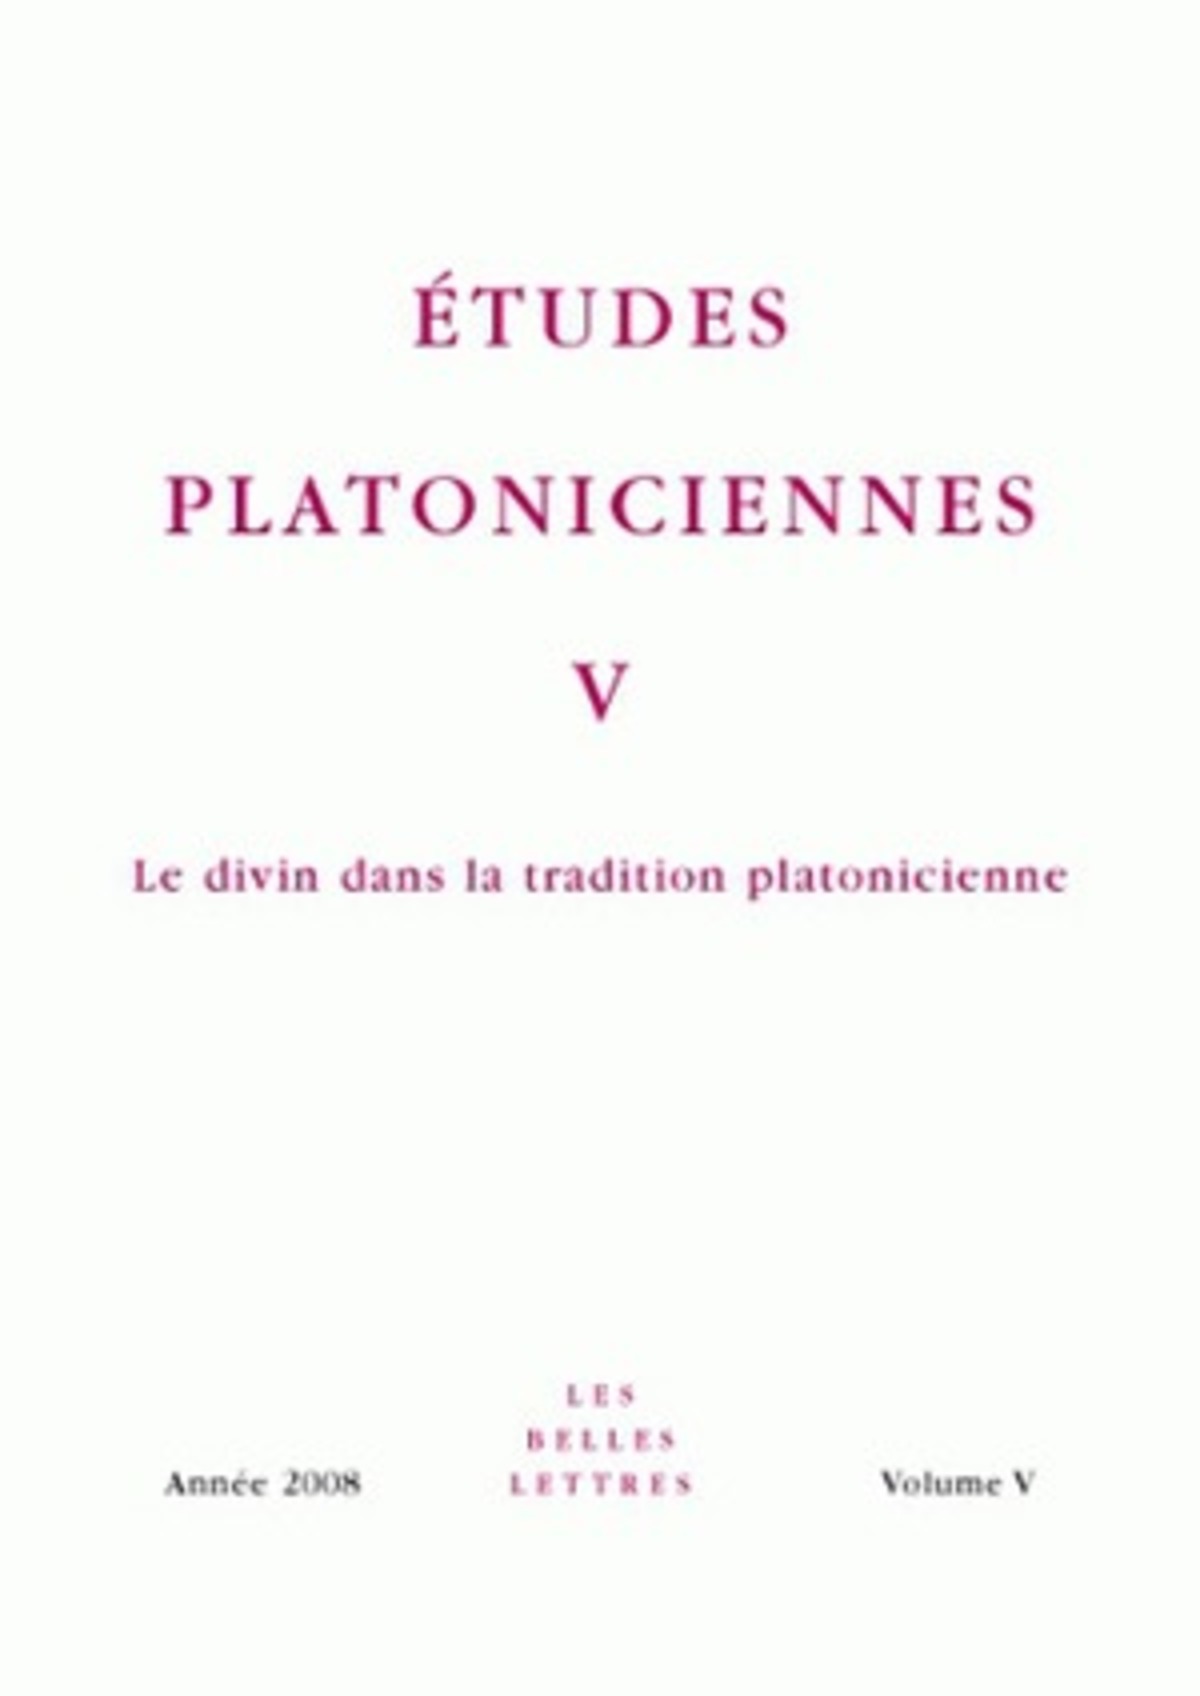 Études platoniciennes V